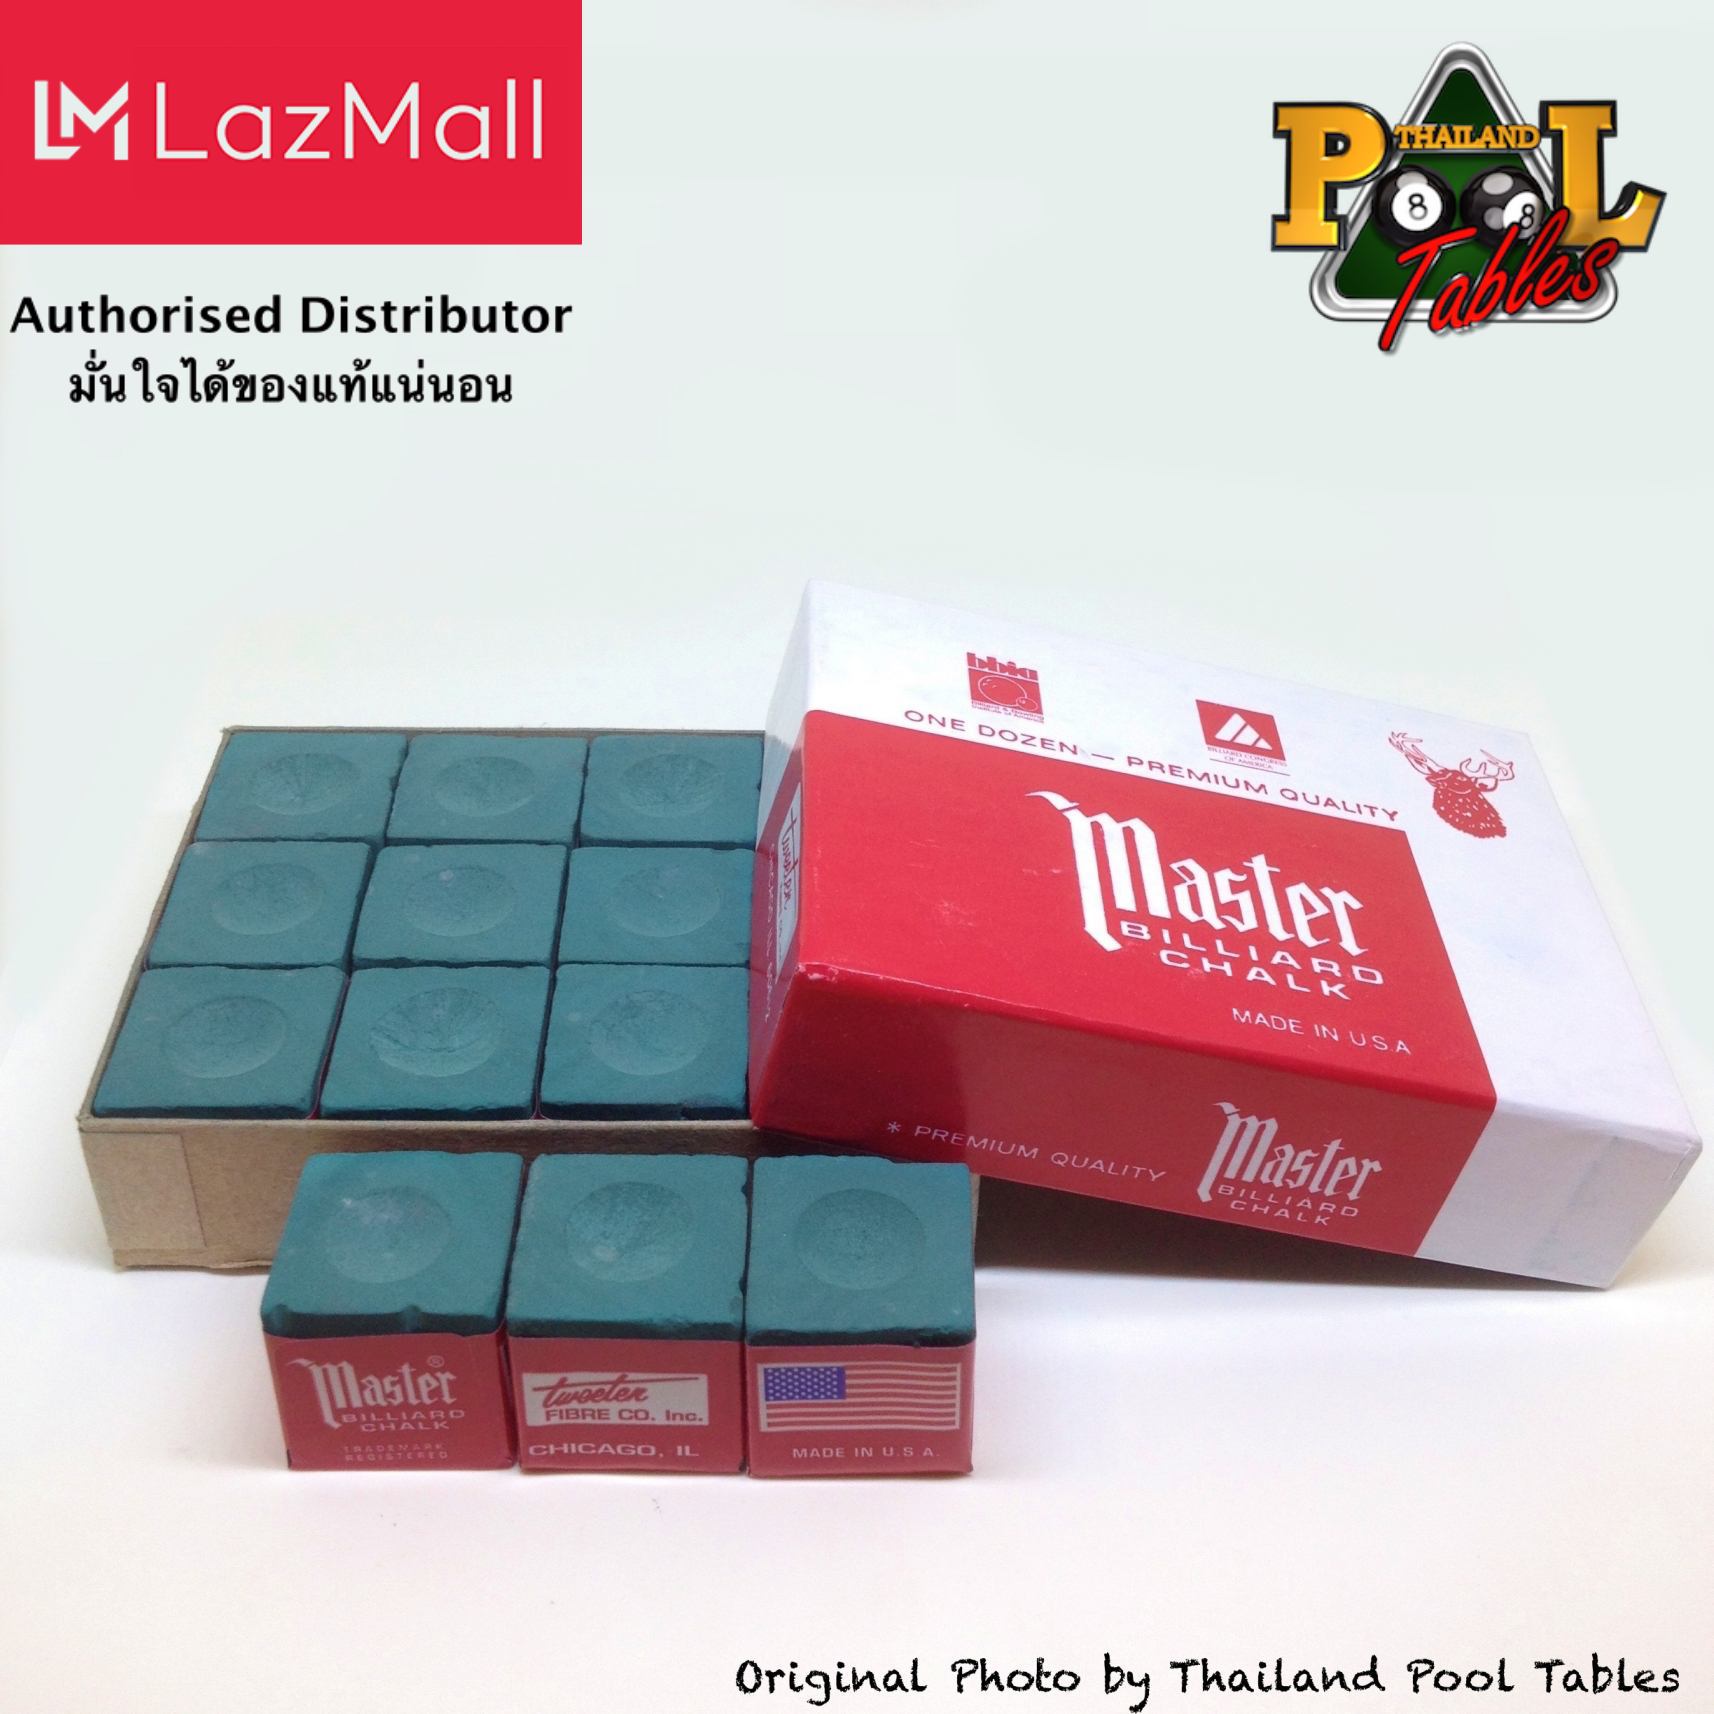 ชอล์คฝนหัวคิวมาสเตอร์ Master Billiard/Pool Cue Chalk Box, 12 Cubes สี Forest สี Forest